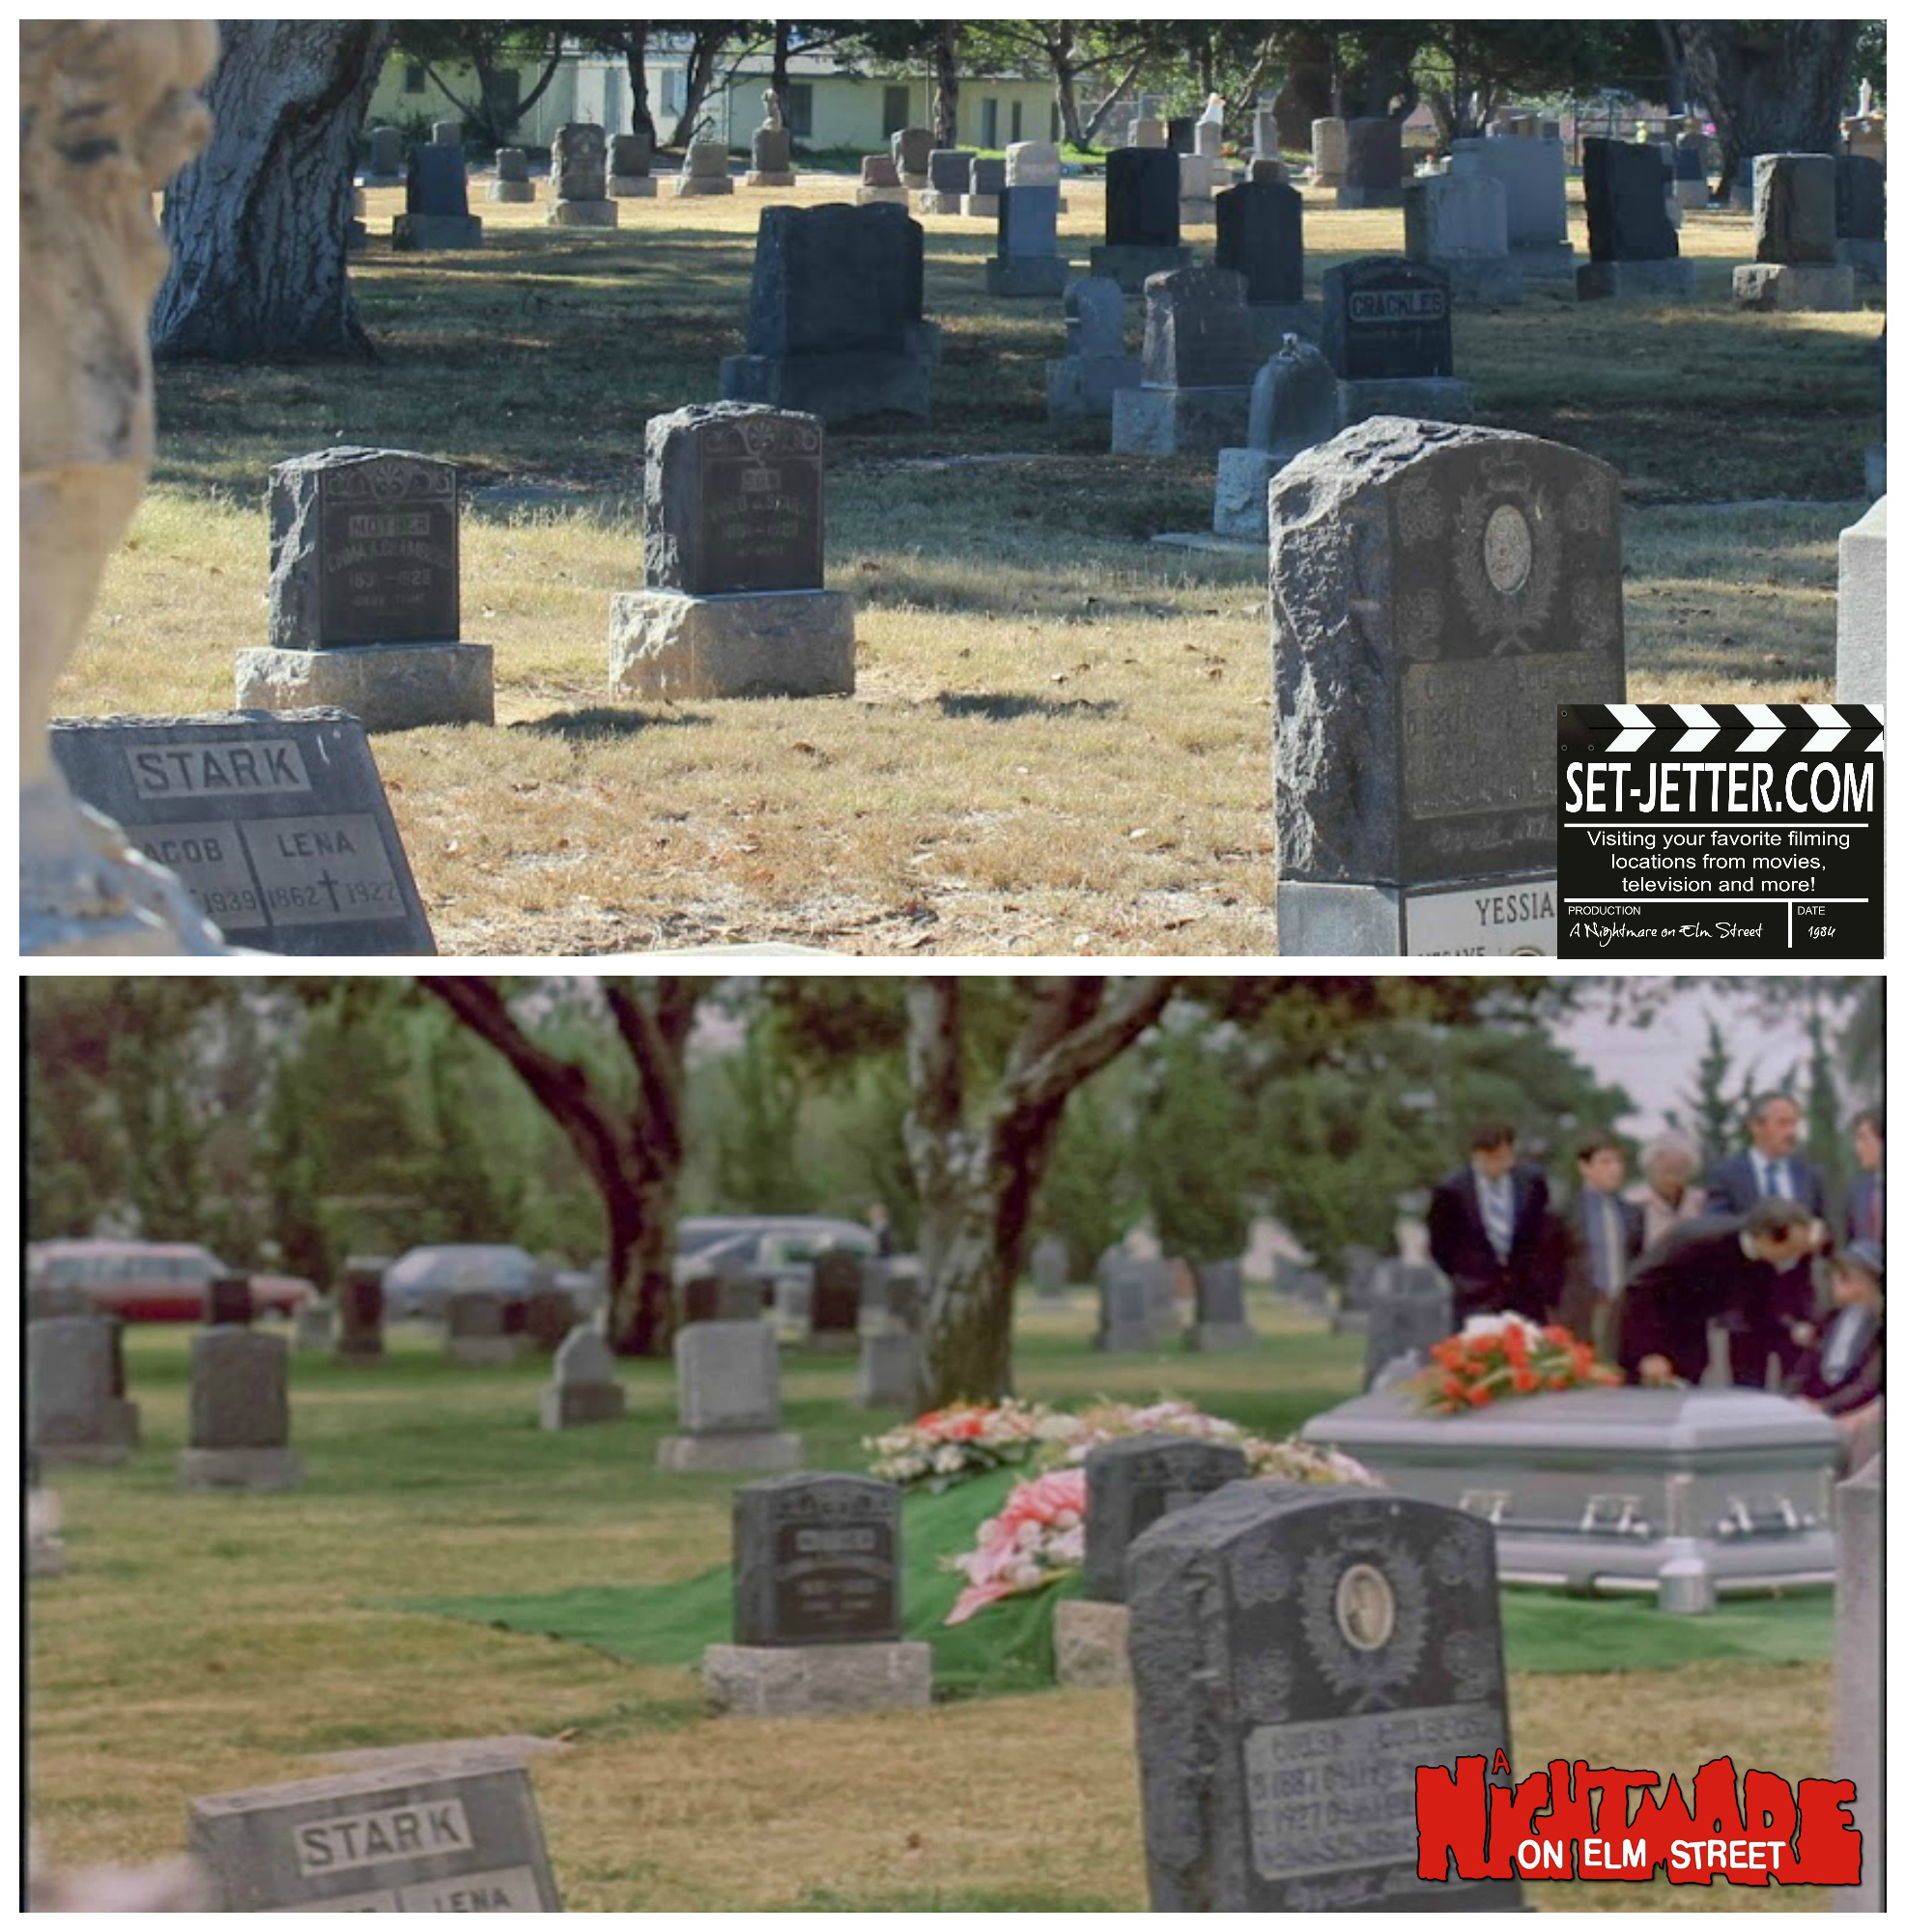 Nightmare on Elm Street comparison 21.jpg